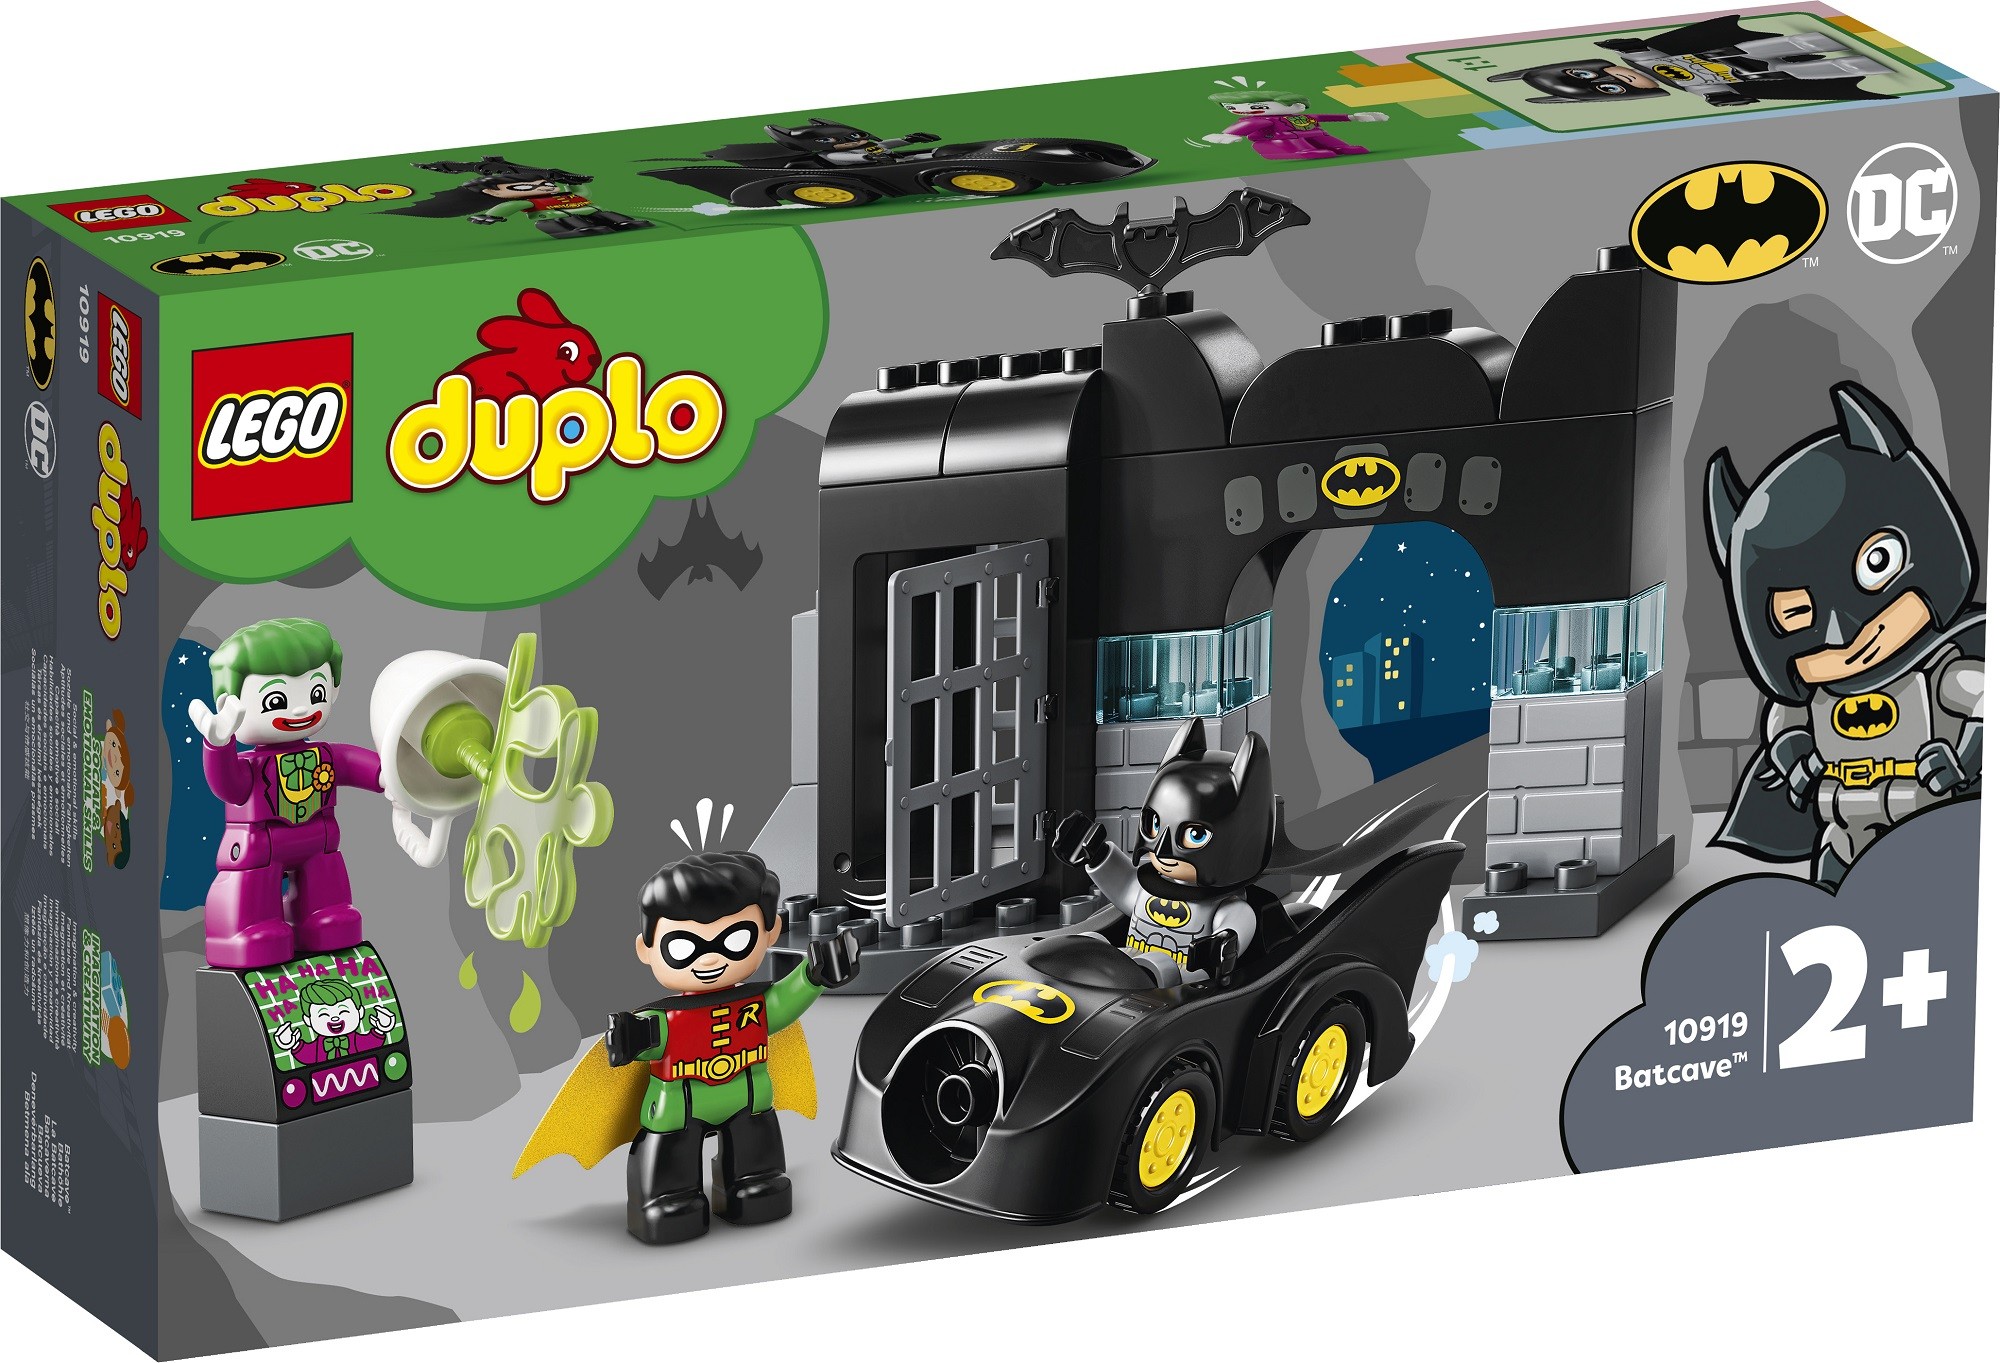 Lego Duplo Dc Comics 10919 Batcave - the batcave roblox